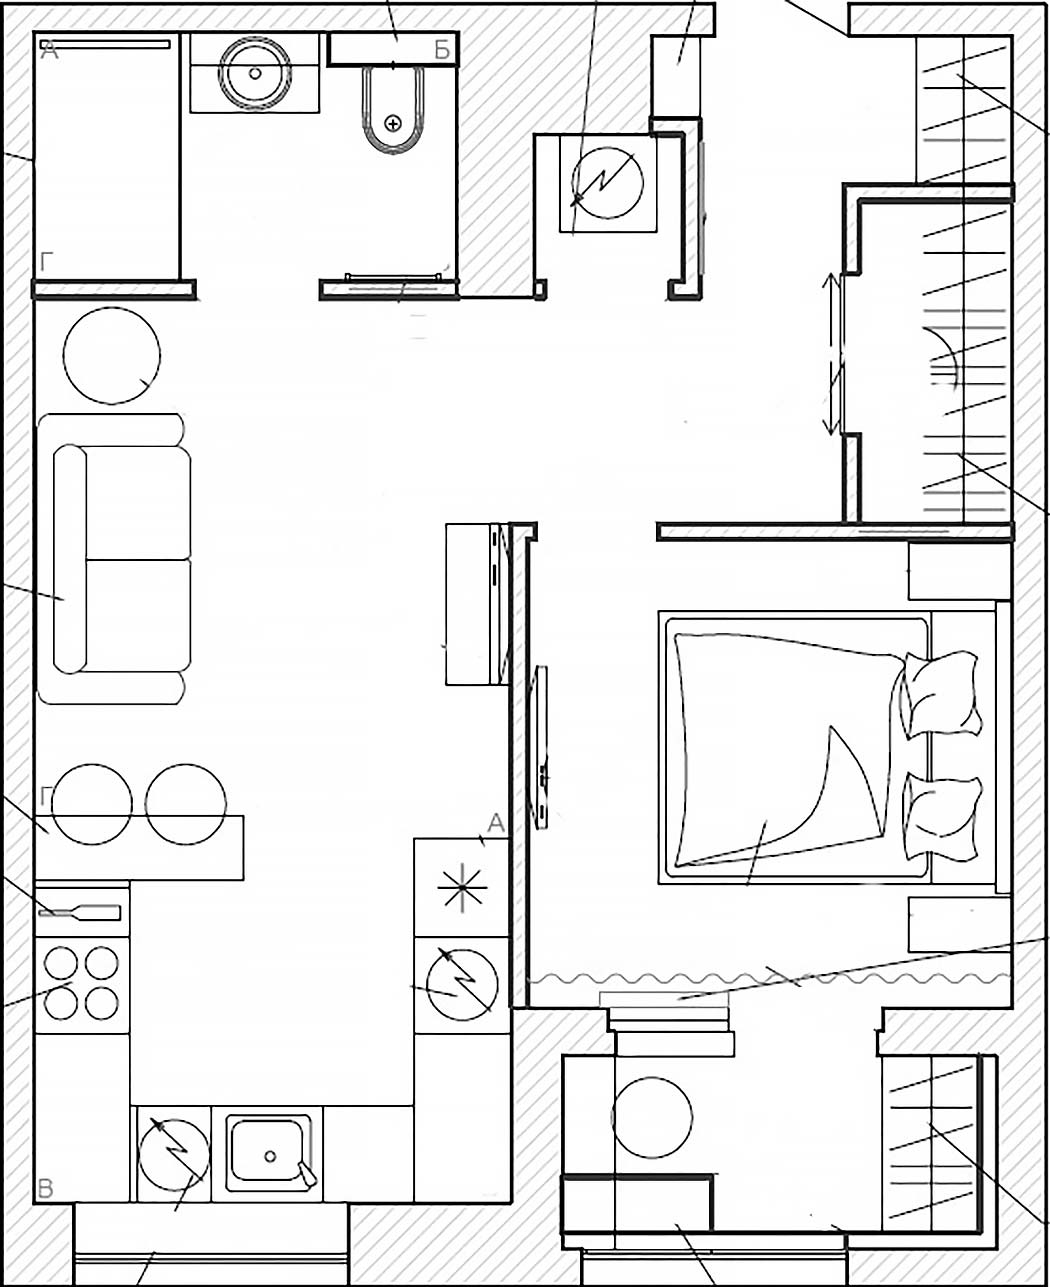 alaprajz - Megszokottól eltérő nappali-konyha elrendezés, modern stílus egy fiatal 42m2-es lakásában